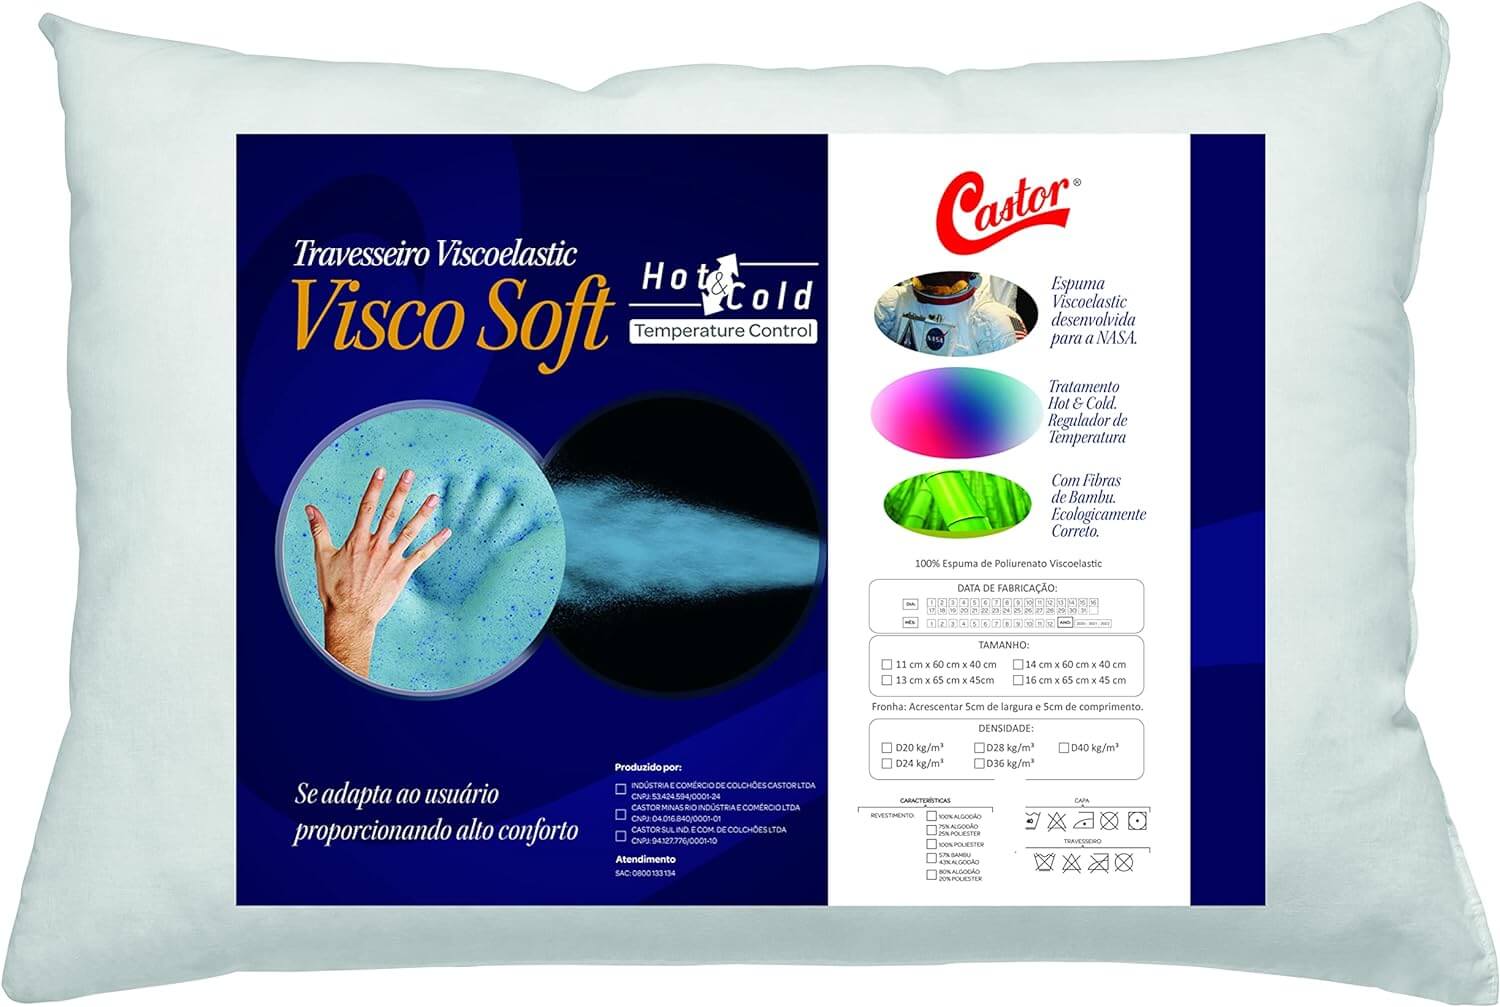 Travesseiro Castor Viscoelastic Visco Soft Hot&Cold D24 040x060x014
Visco Soft Hot&Cold
Garantia 90 dias
Embalagem Plastica